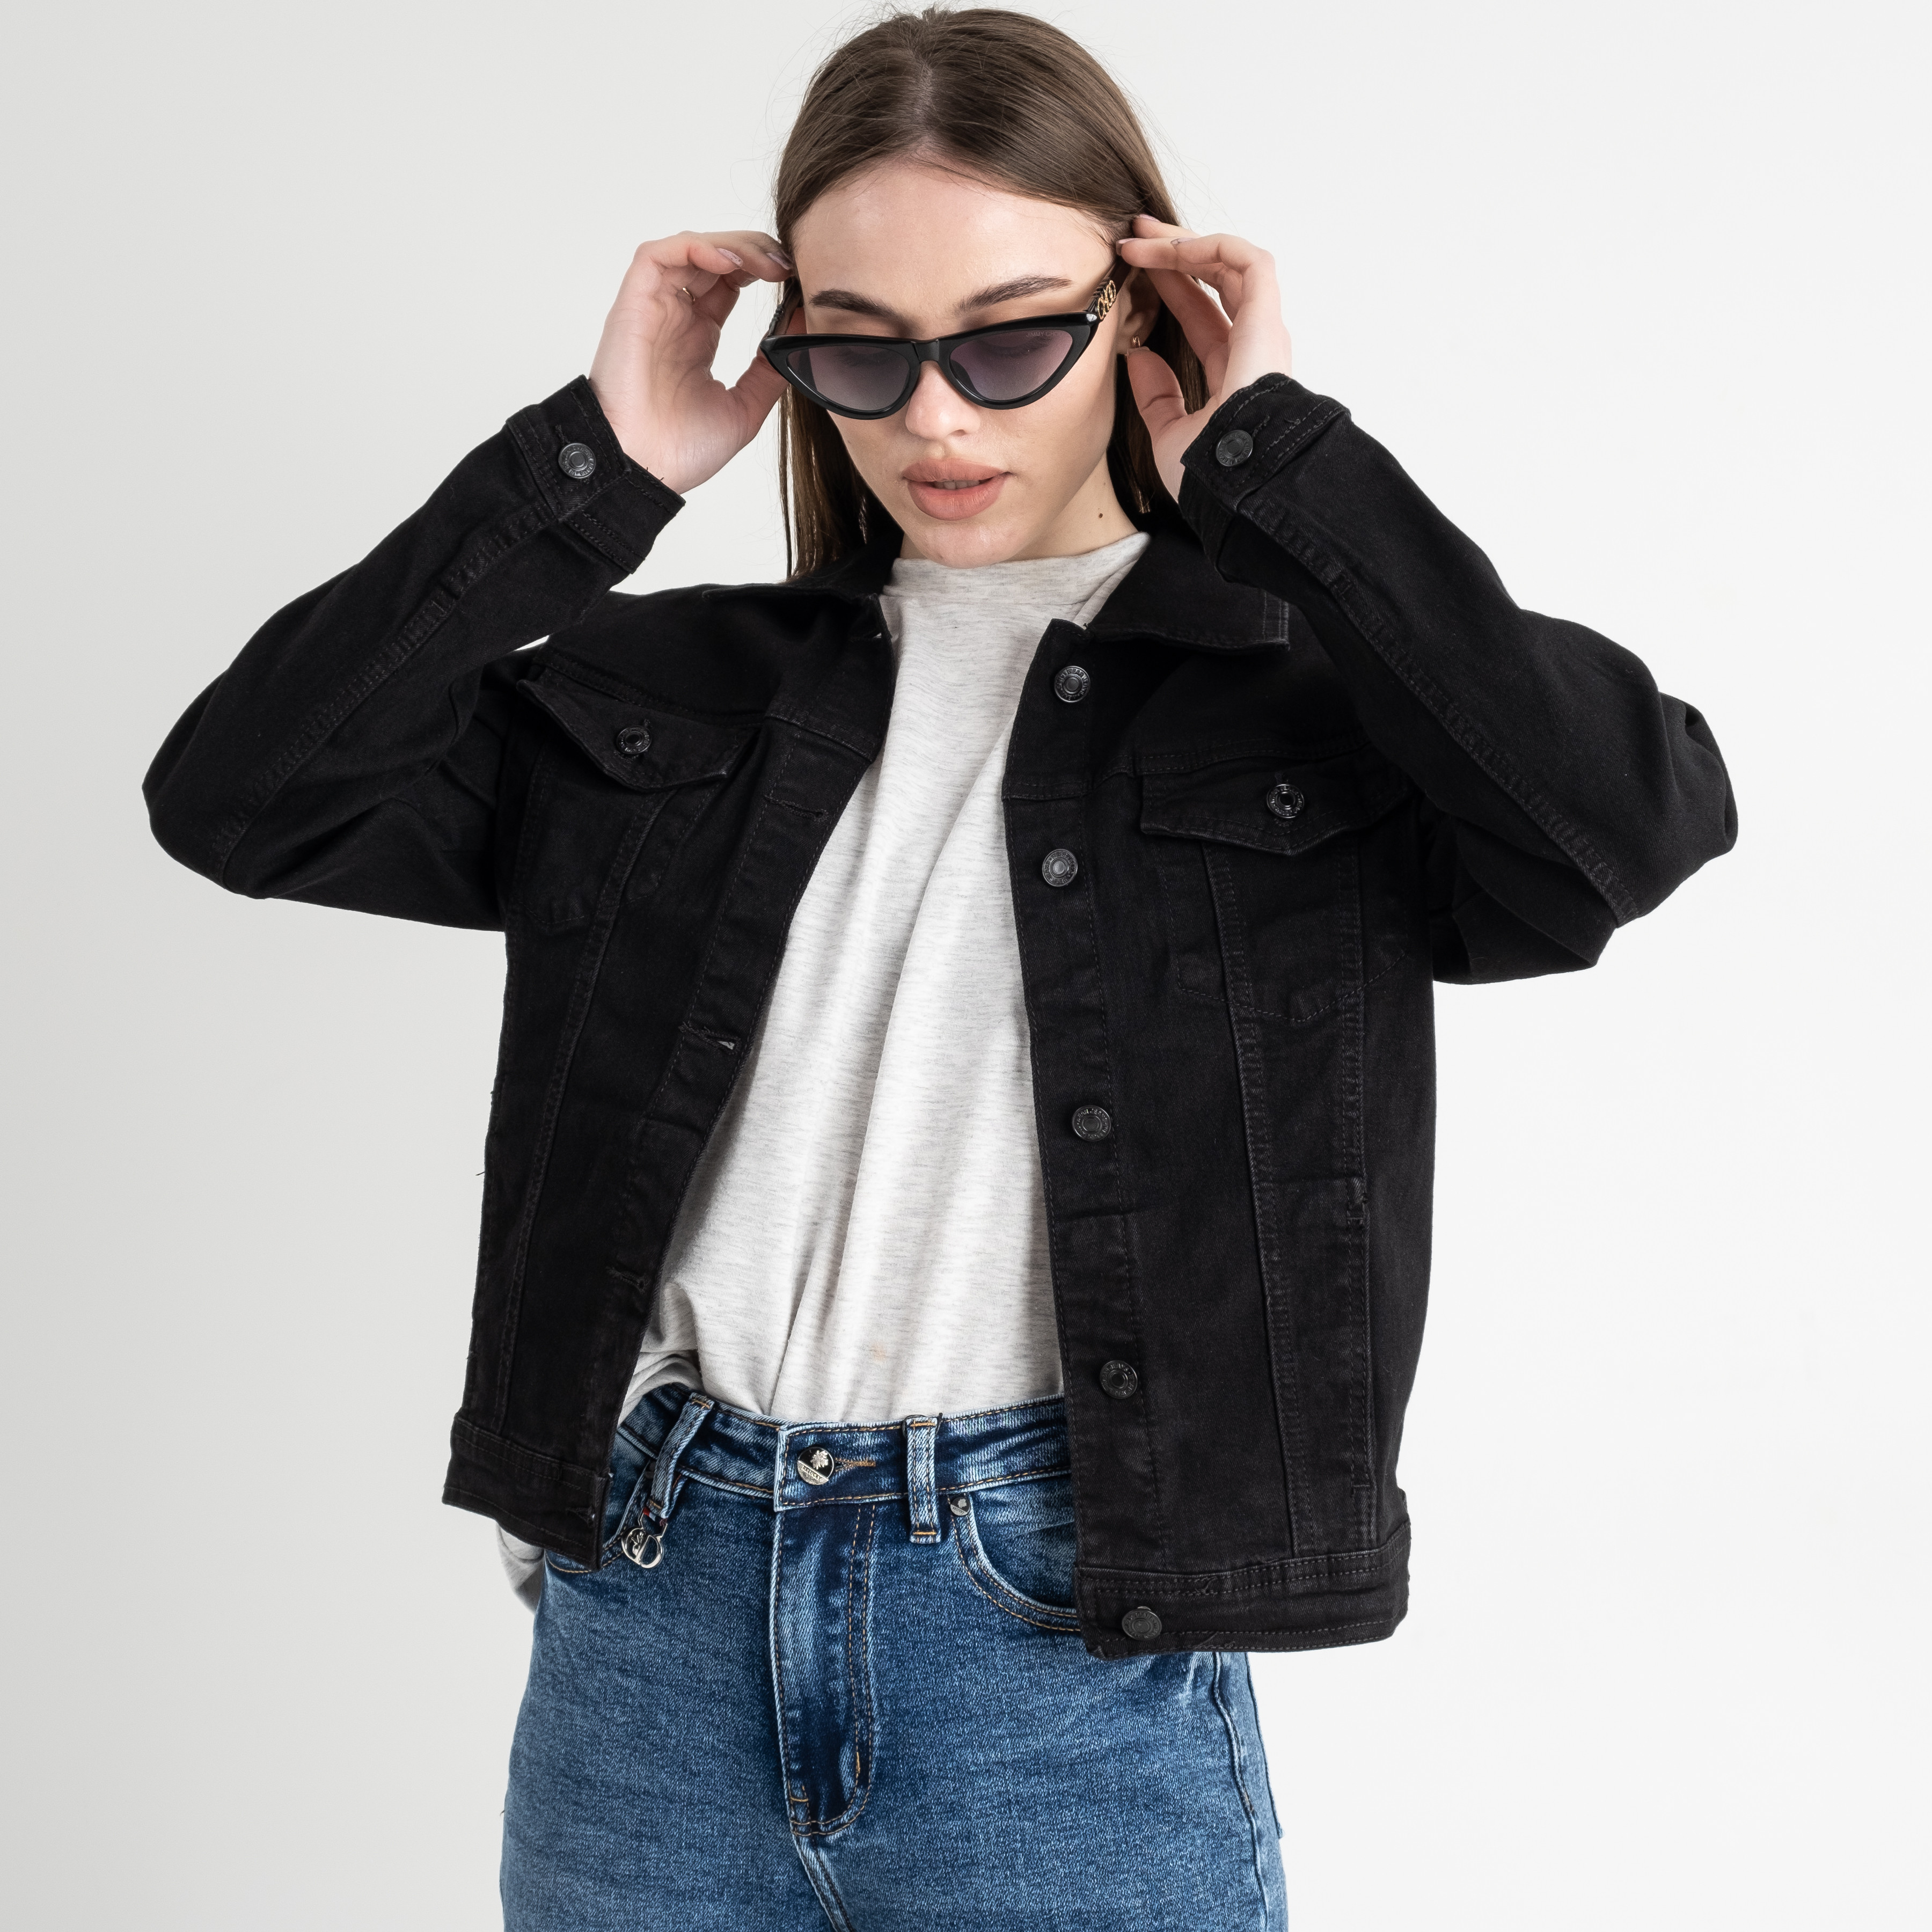 0900 New Jean джинсовая куртка женская черная стрейчевая ( 6 ед.размеры: XS.S.M.L.XL.2XL)